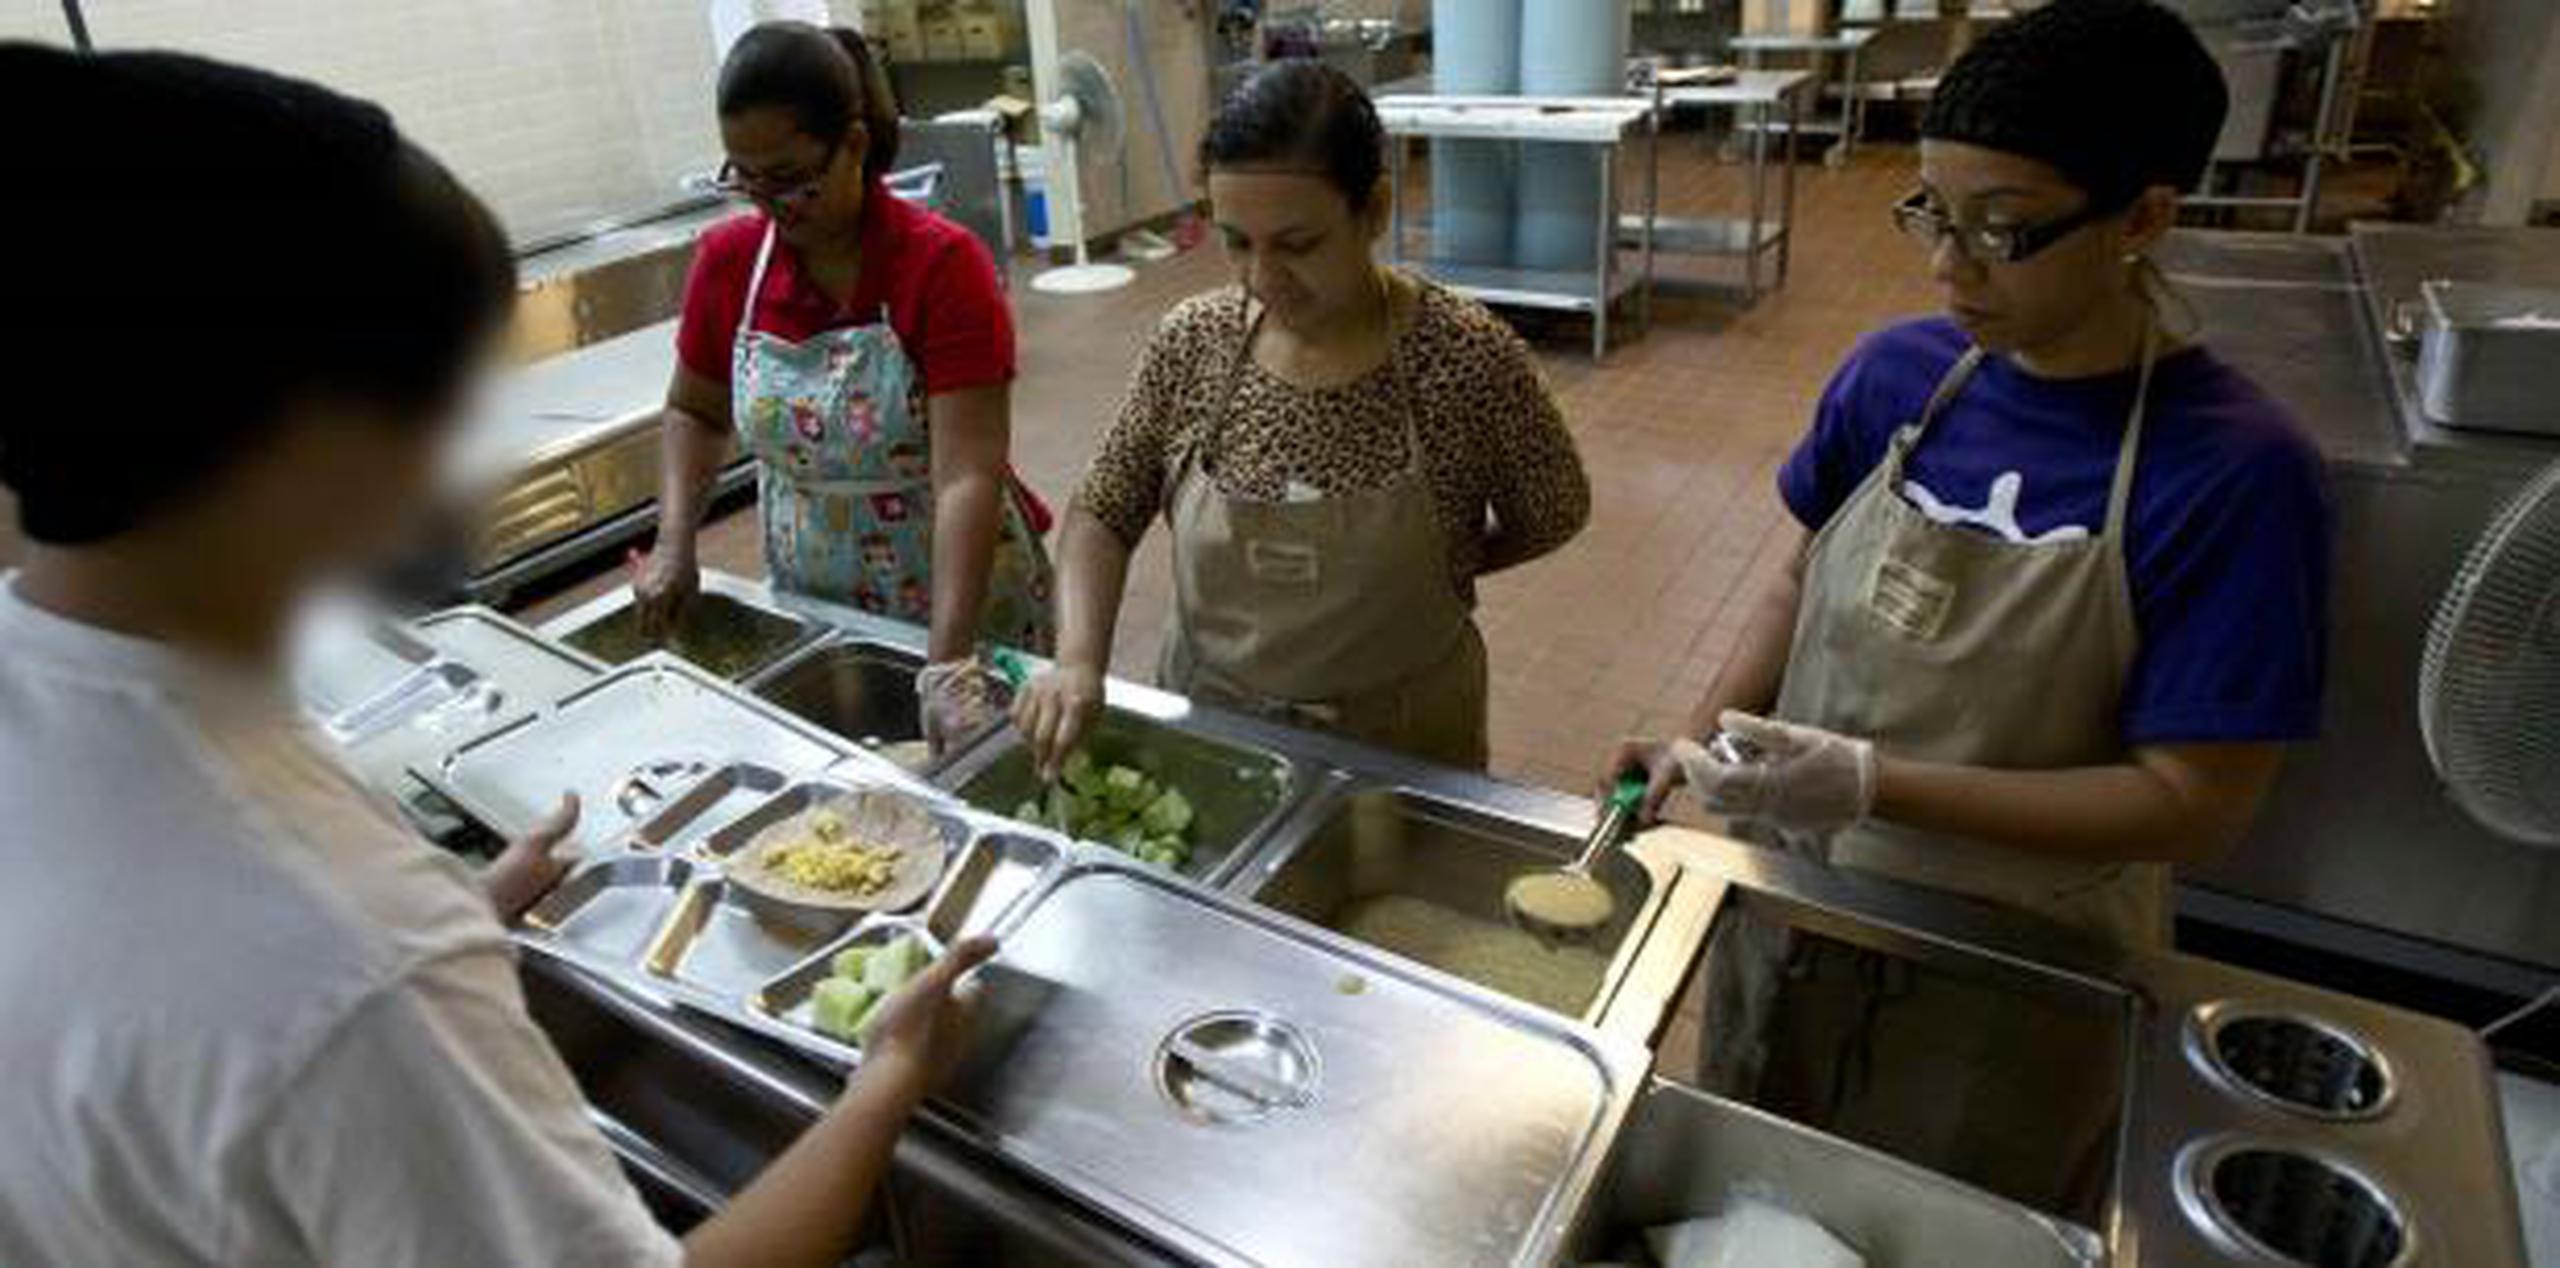 Un estudiante recibe alimentos en un comedor escolar. (Archivo)